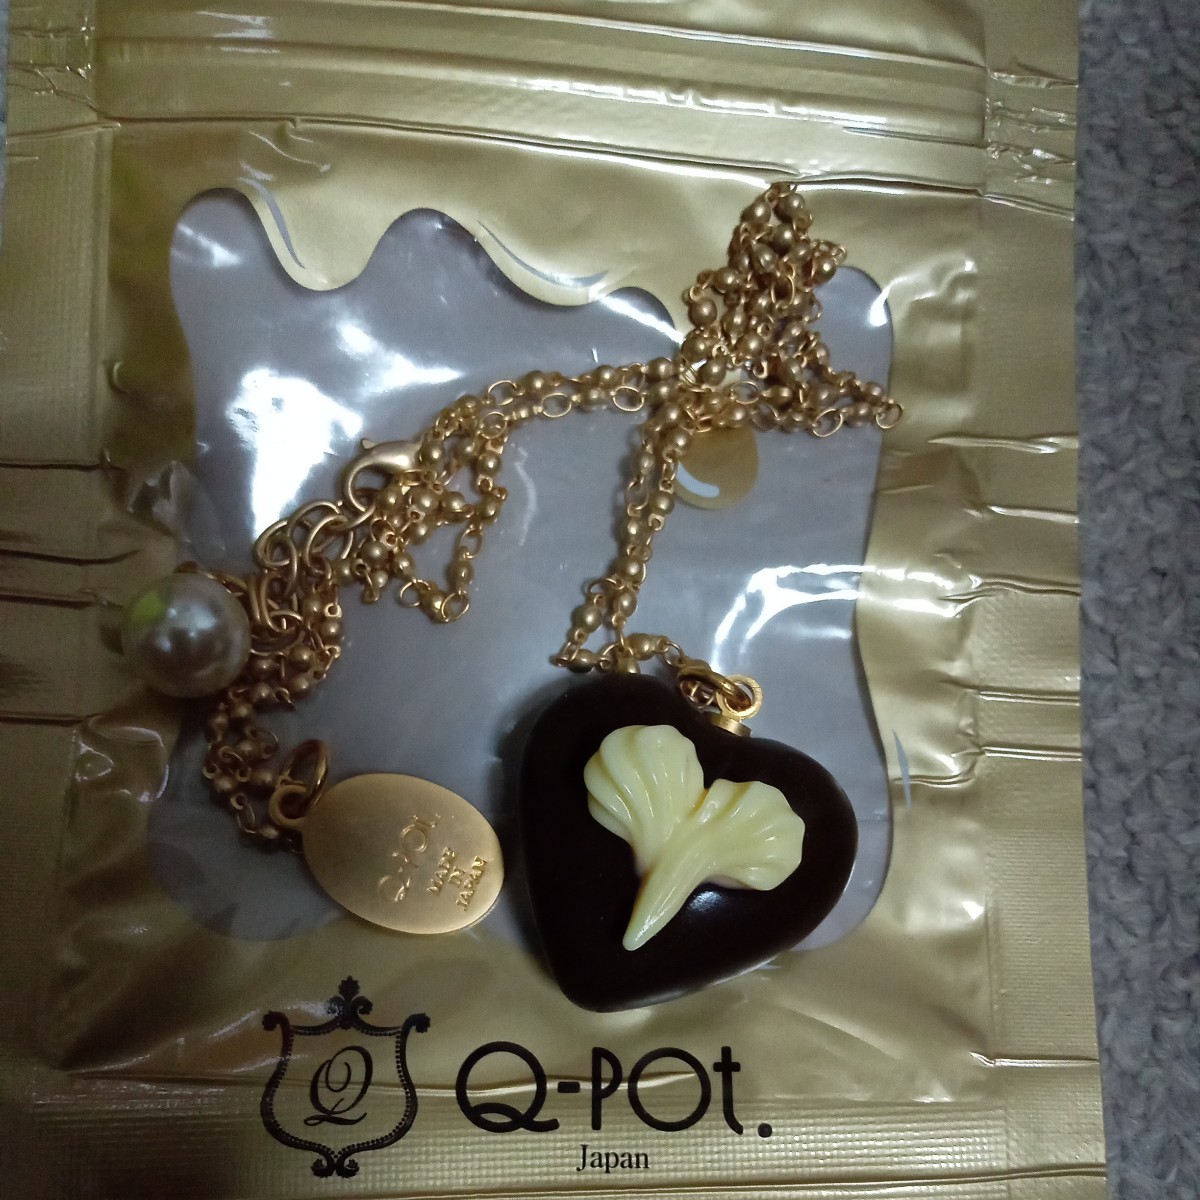 代購代標第一品牌－樂淘letao－Q-pot ネックレスハートチョコレート